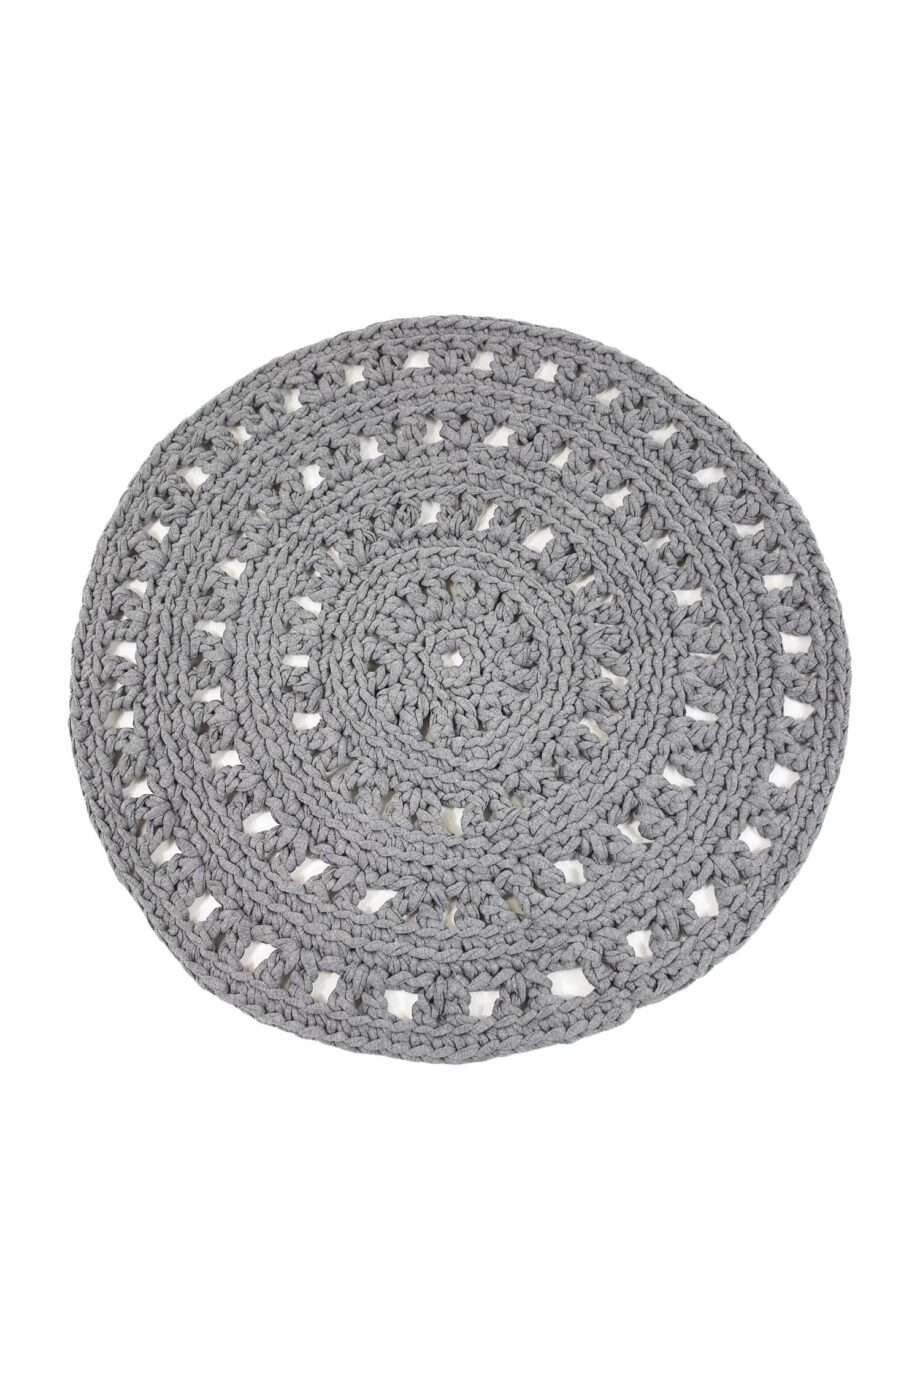 arab light grey crochet cotton floor mat small